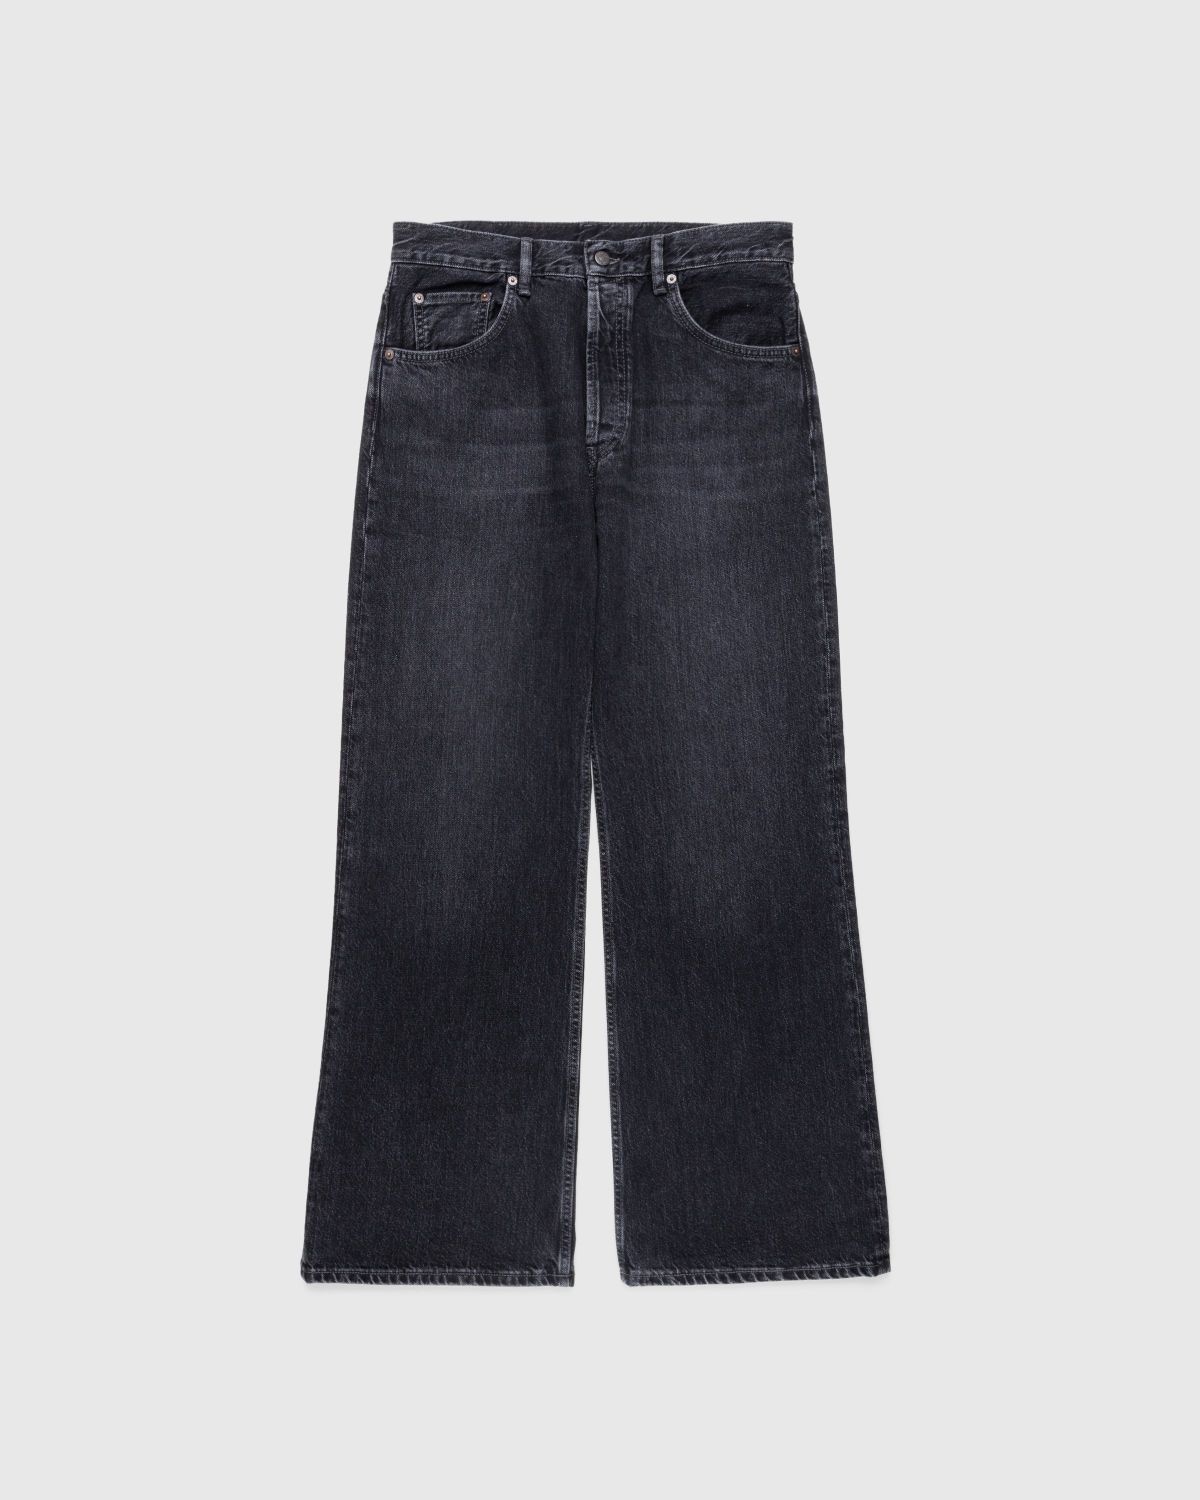 海底パイプライン 28/30 Acne Studios Loose Fit Jeans 2021M - パンツ